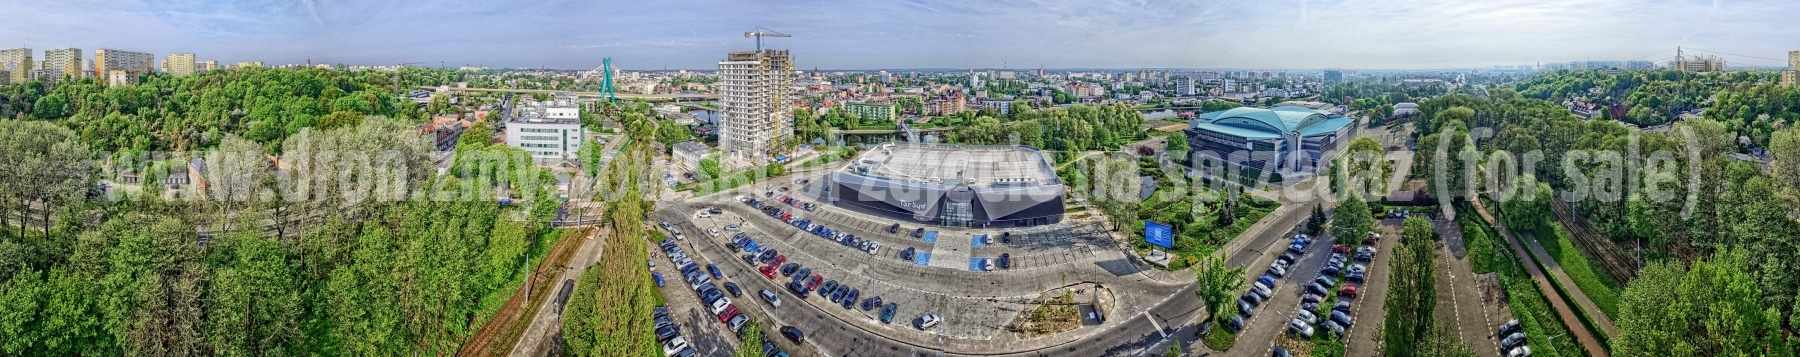 2018-04-29-lot-dronem-w-Bydgoszczy-przy-Luczniczce-Artego-Arena-i-Torbydzie_001_HDR_panorama